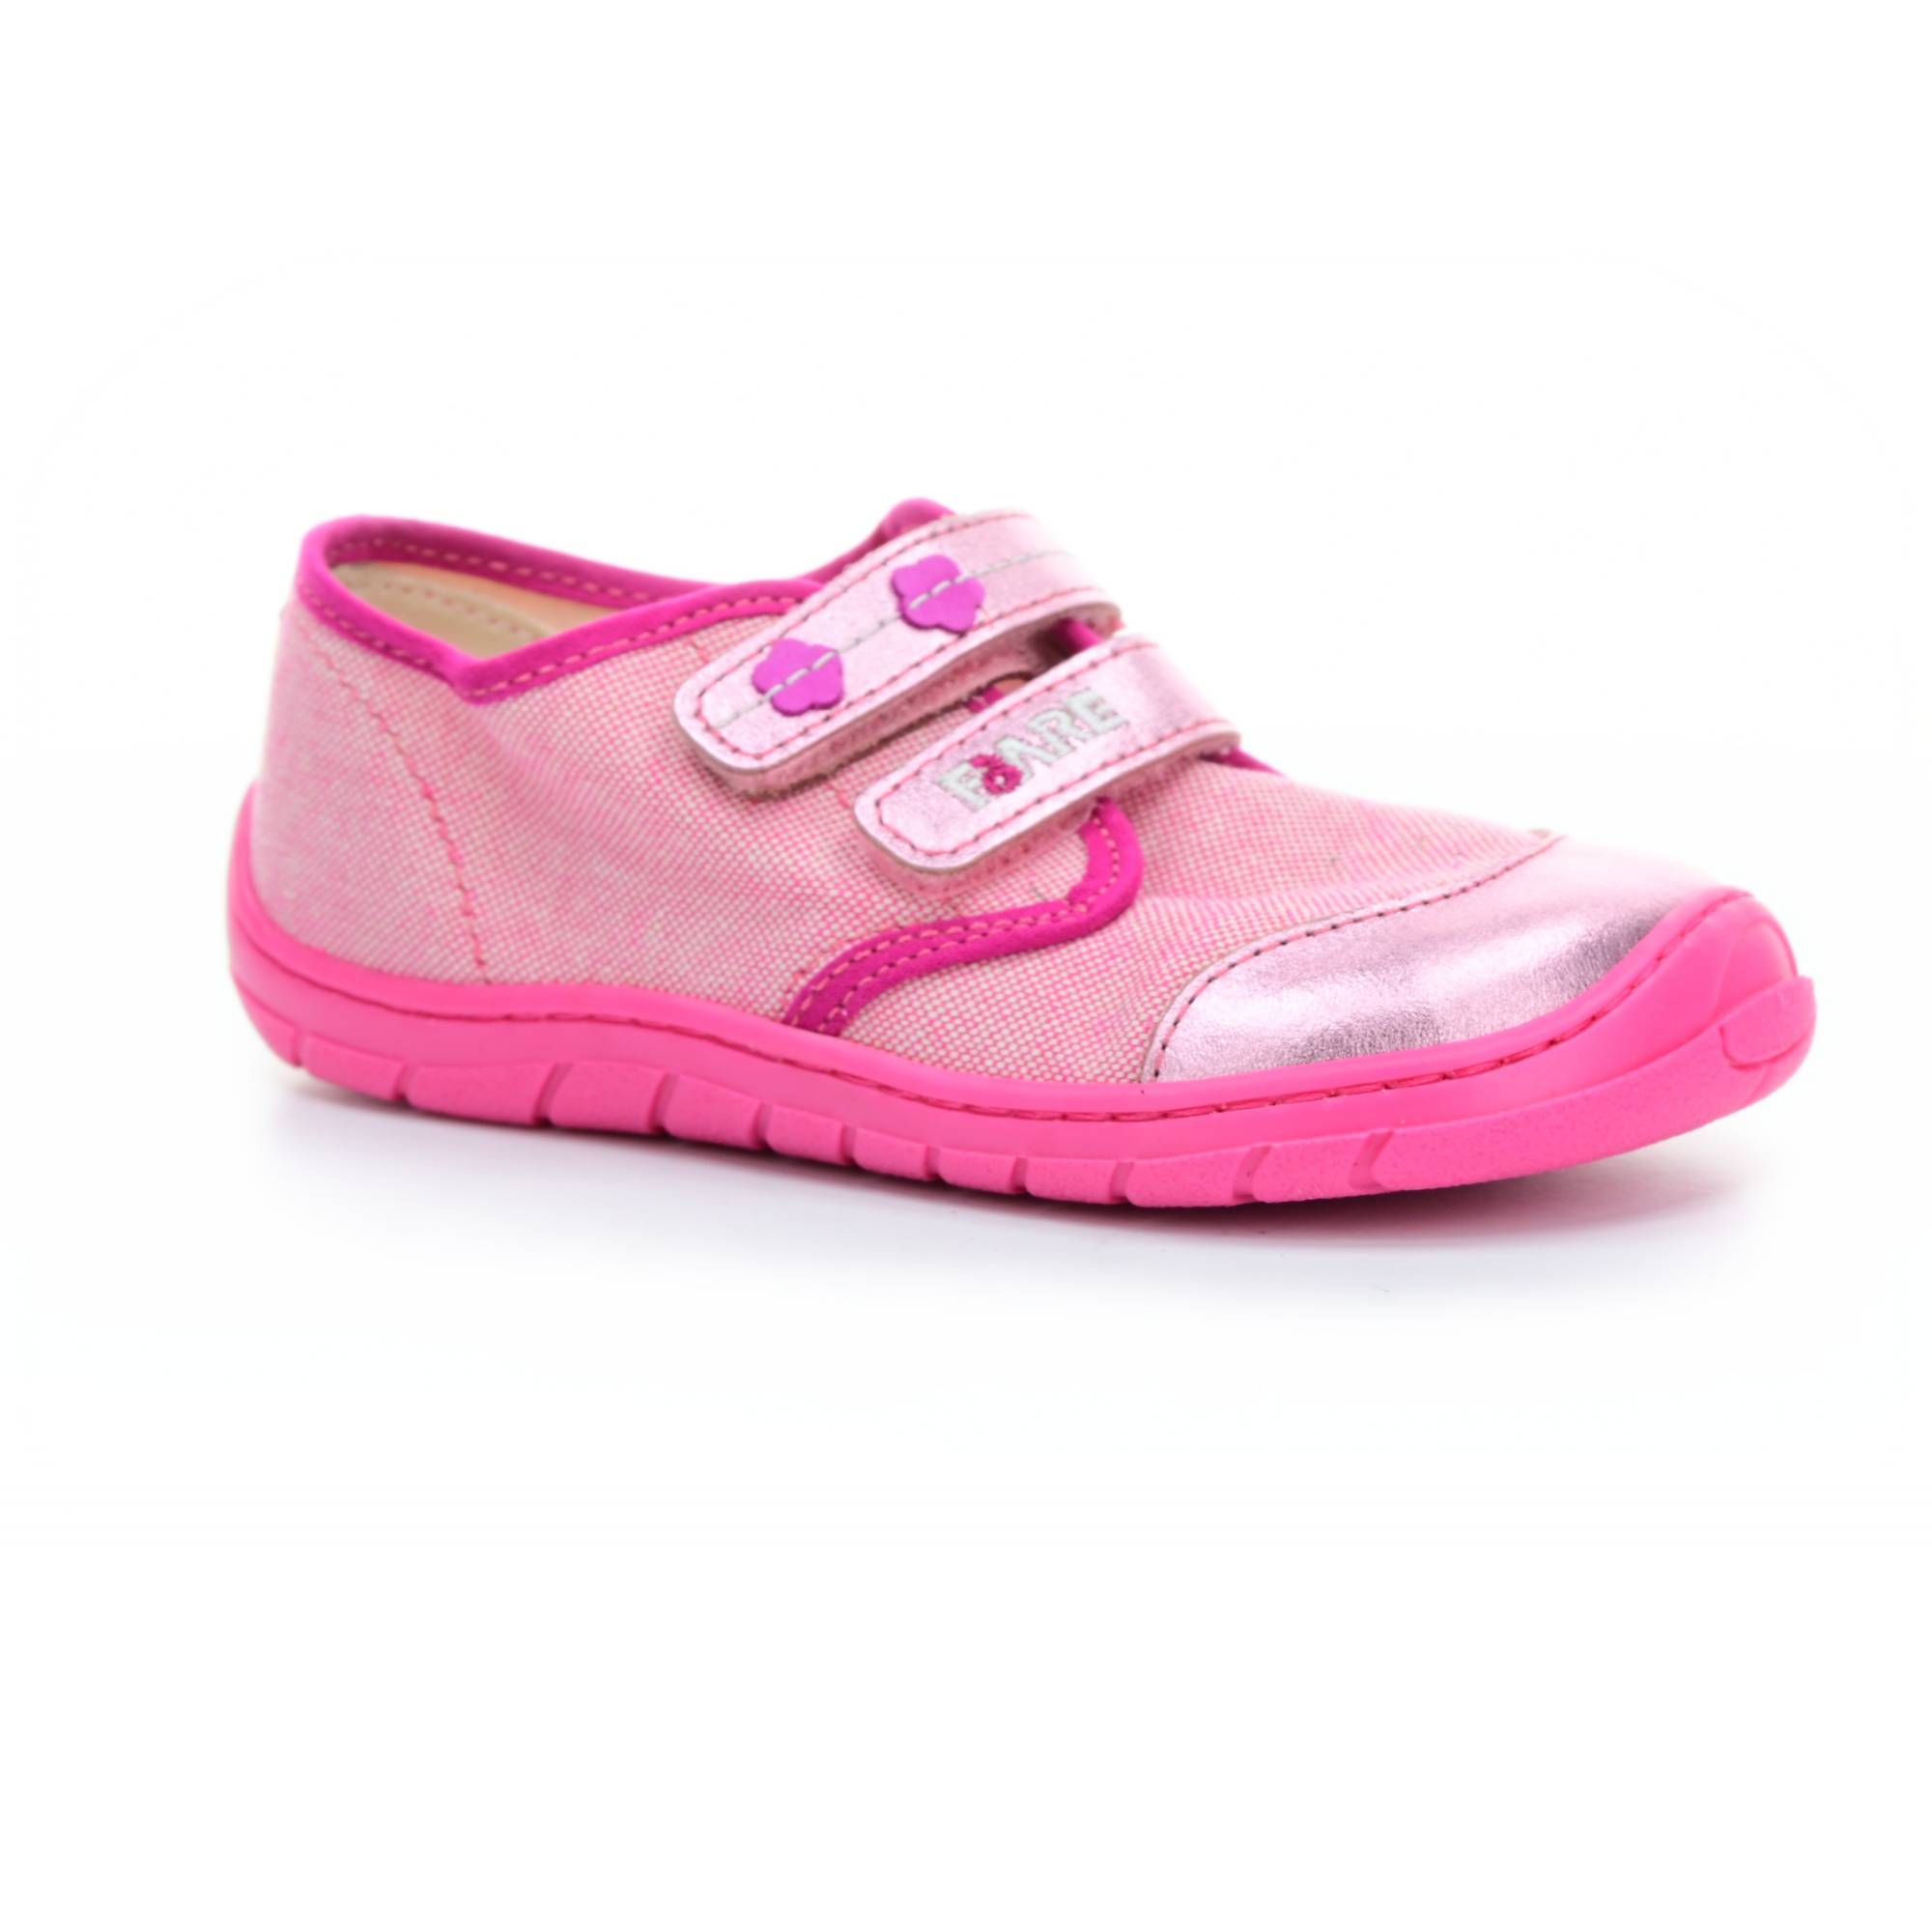 Levně boty Fare 5111453 růžové plátěnky (bare)